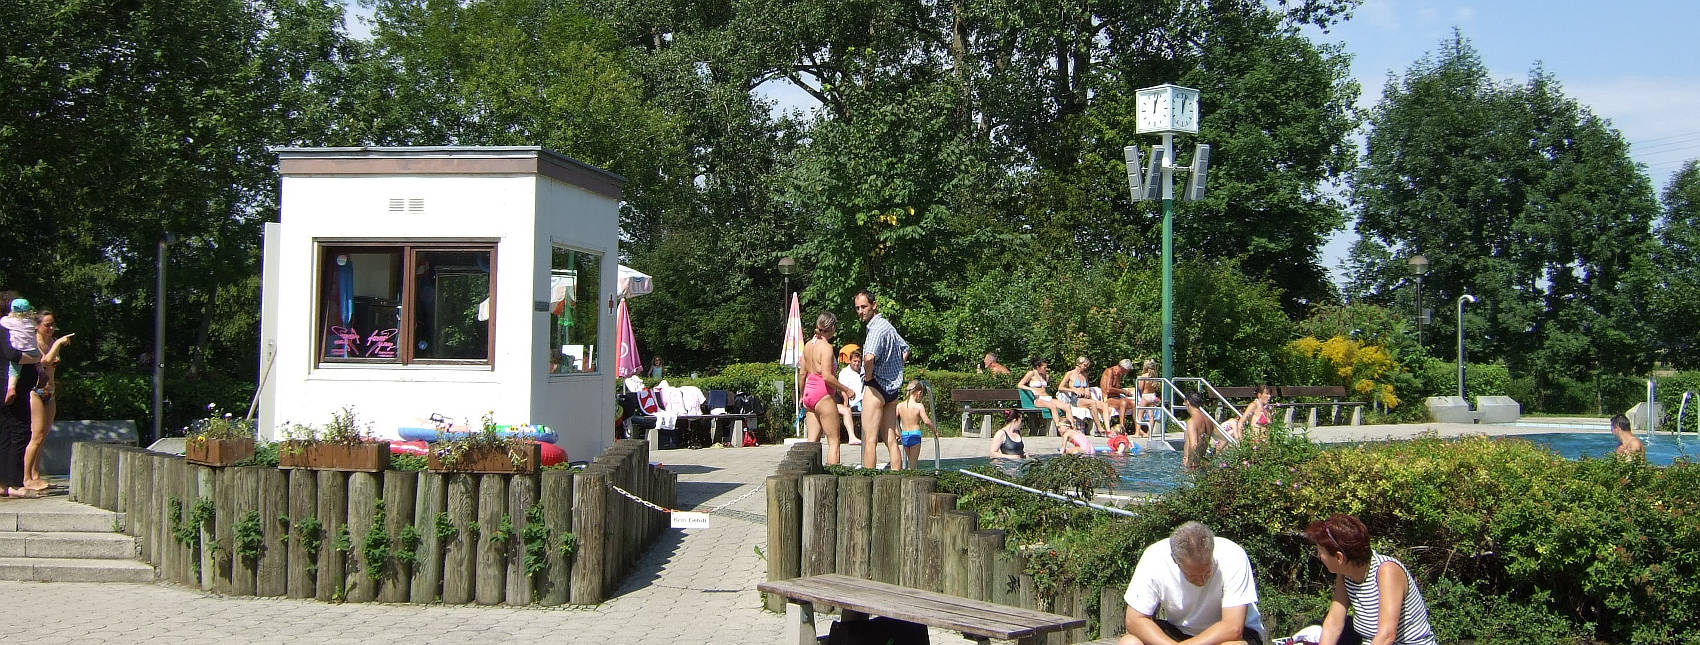 Freibad, Schwimmbad, Hallenbad im Landkreis Fürstenfeldbruck